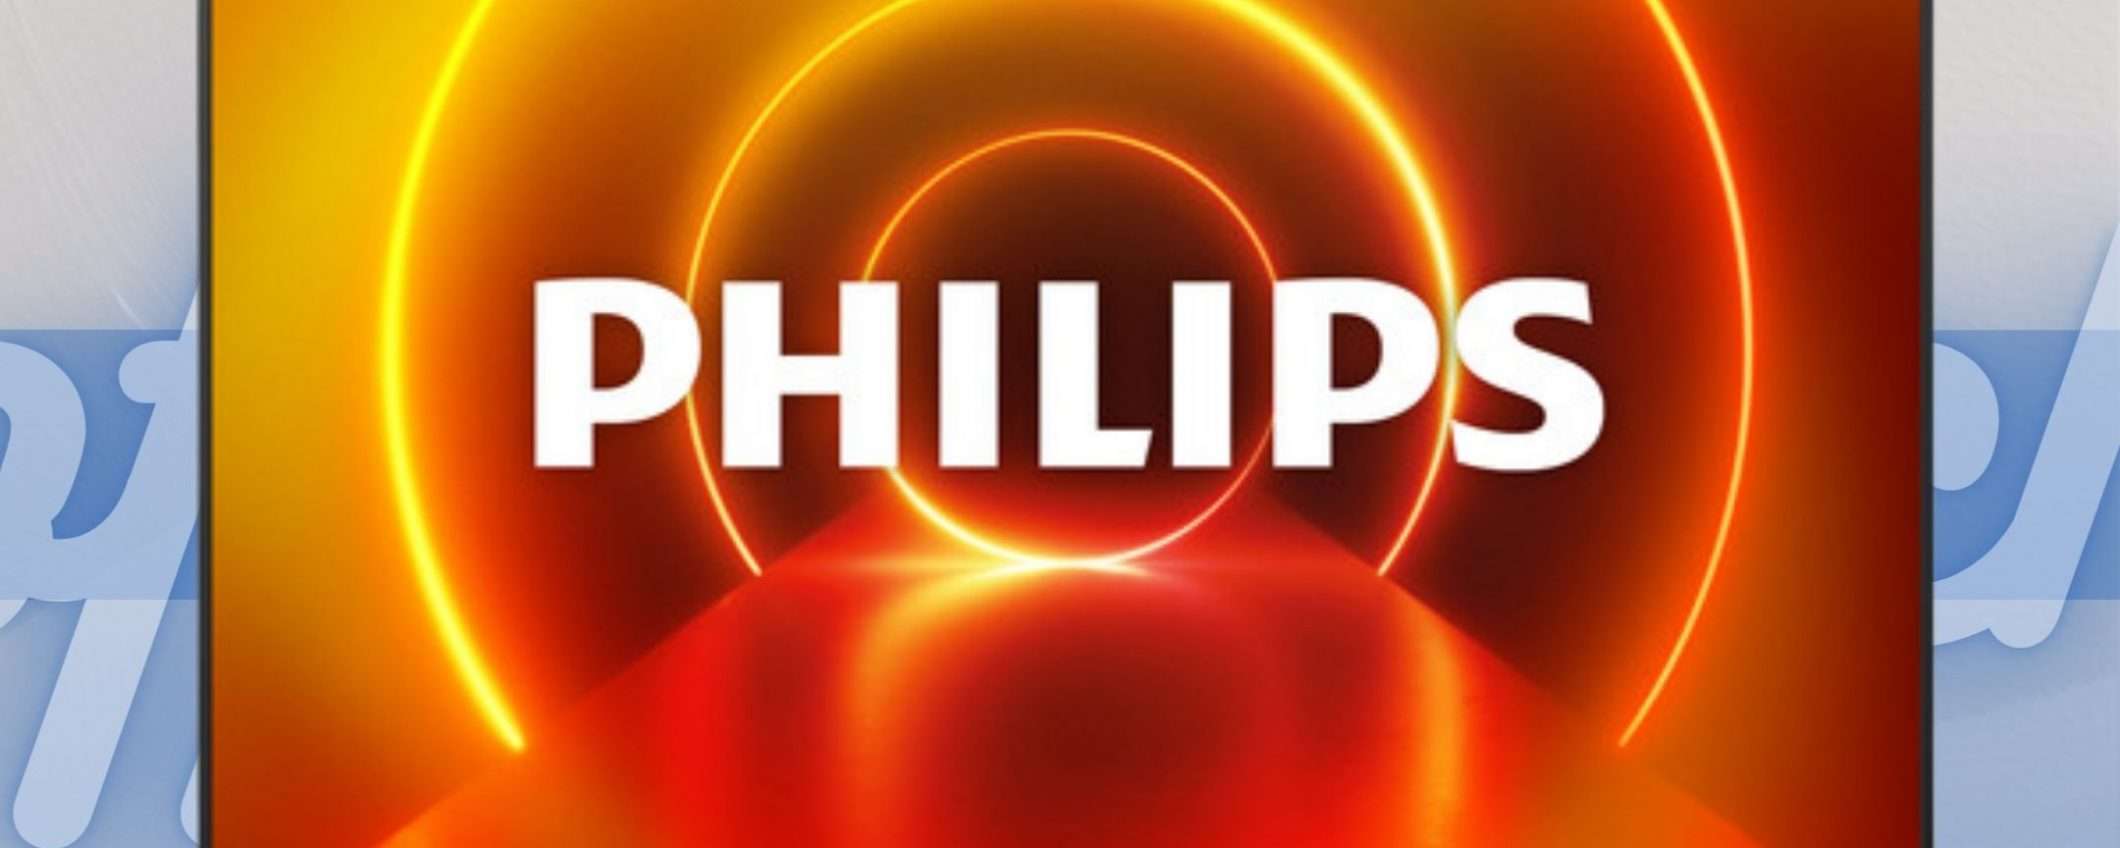 Philips Ambilight: sganciata la bomba su eBay con DOPPIO SCONTO